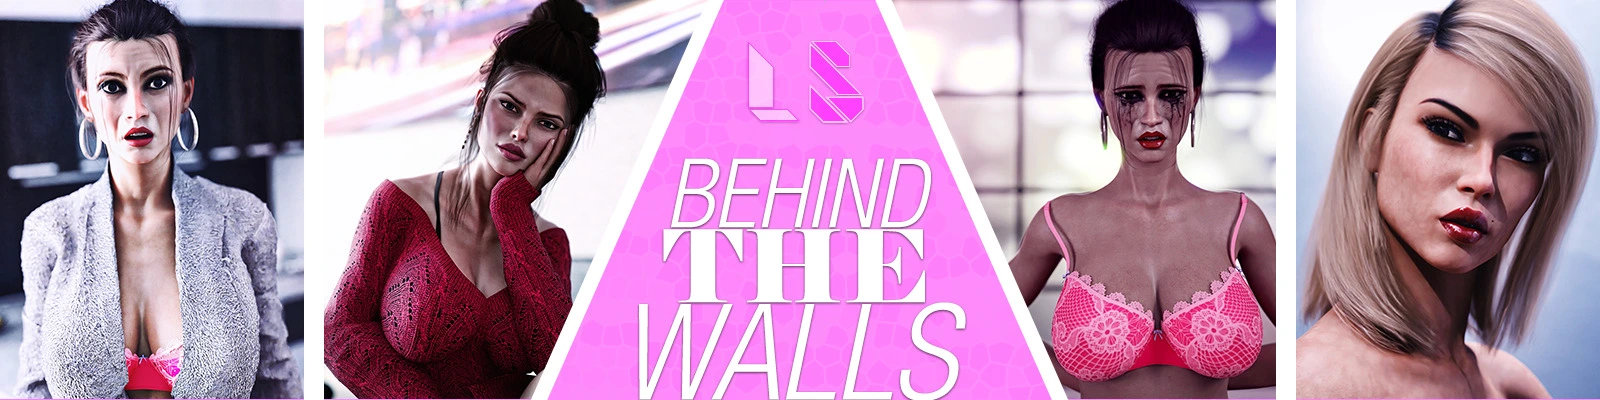 Behind The Walls main image